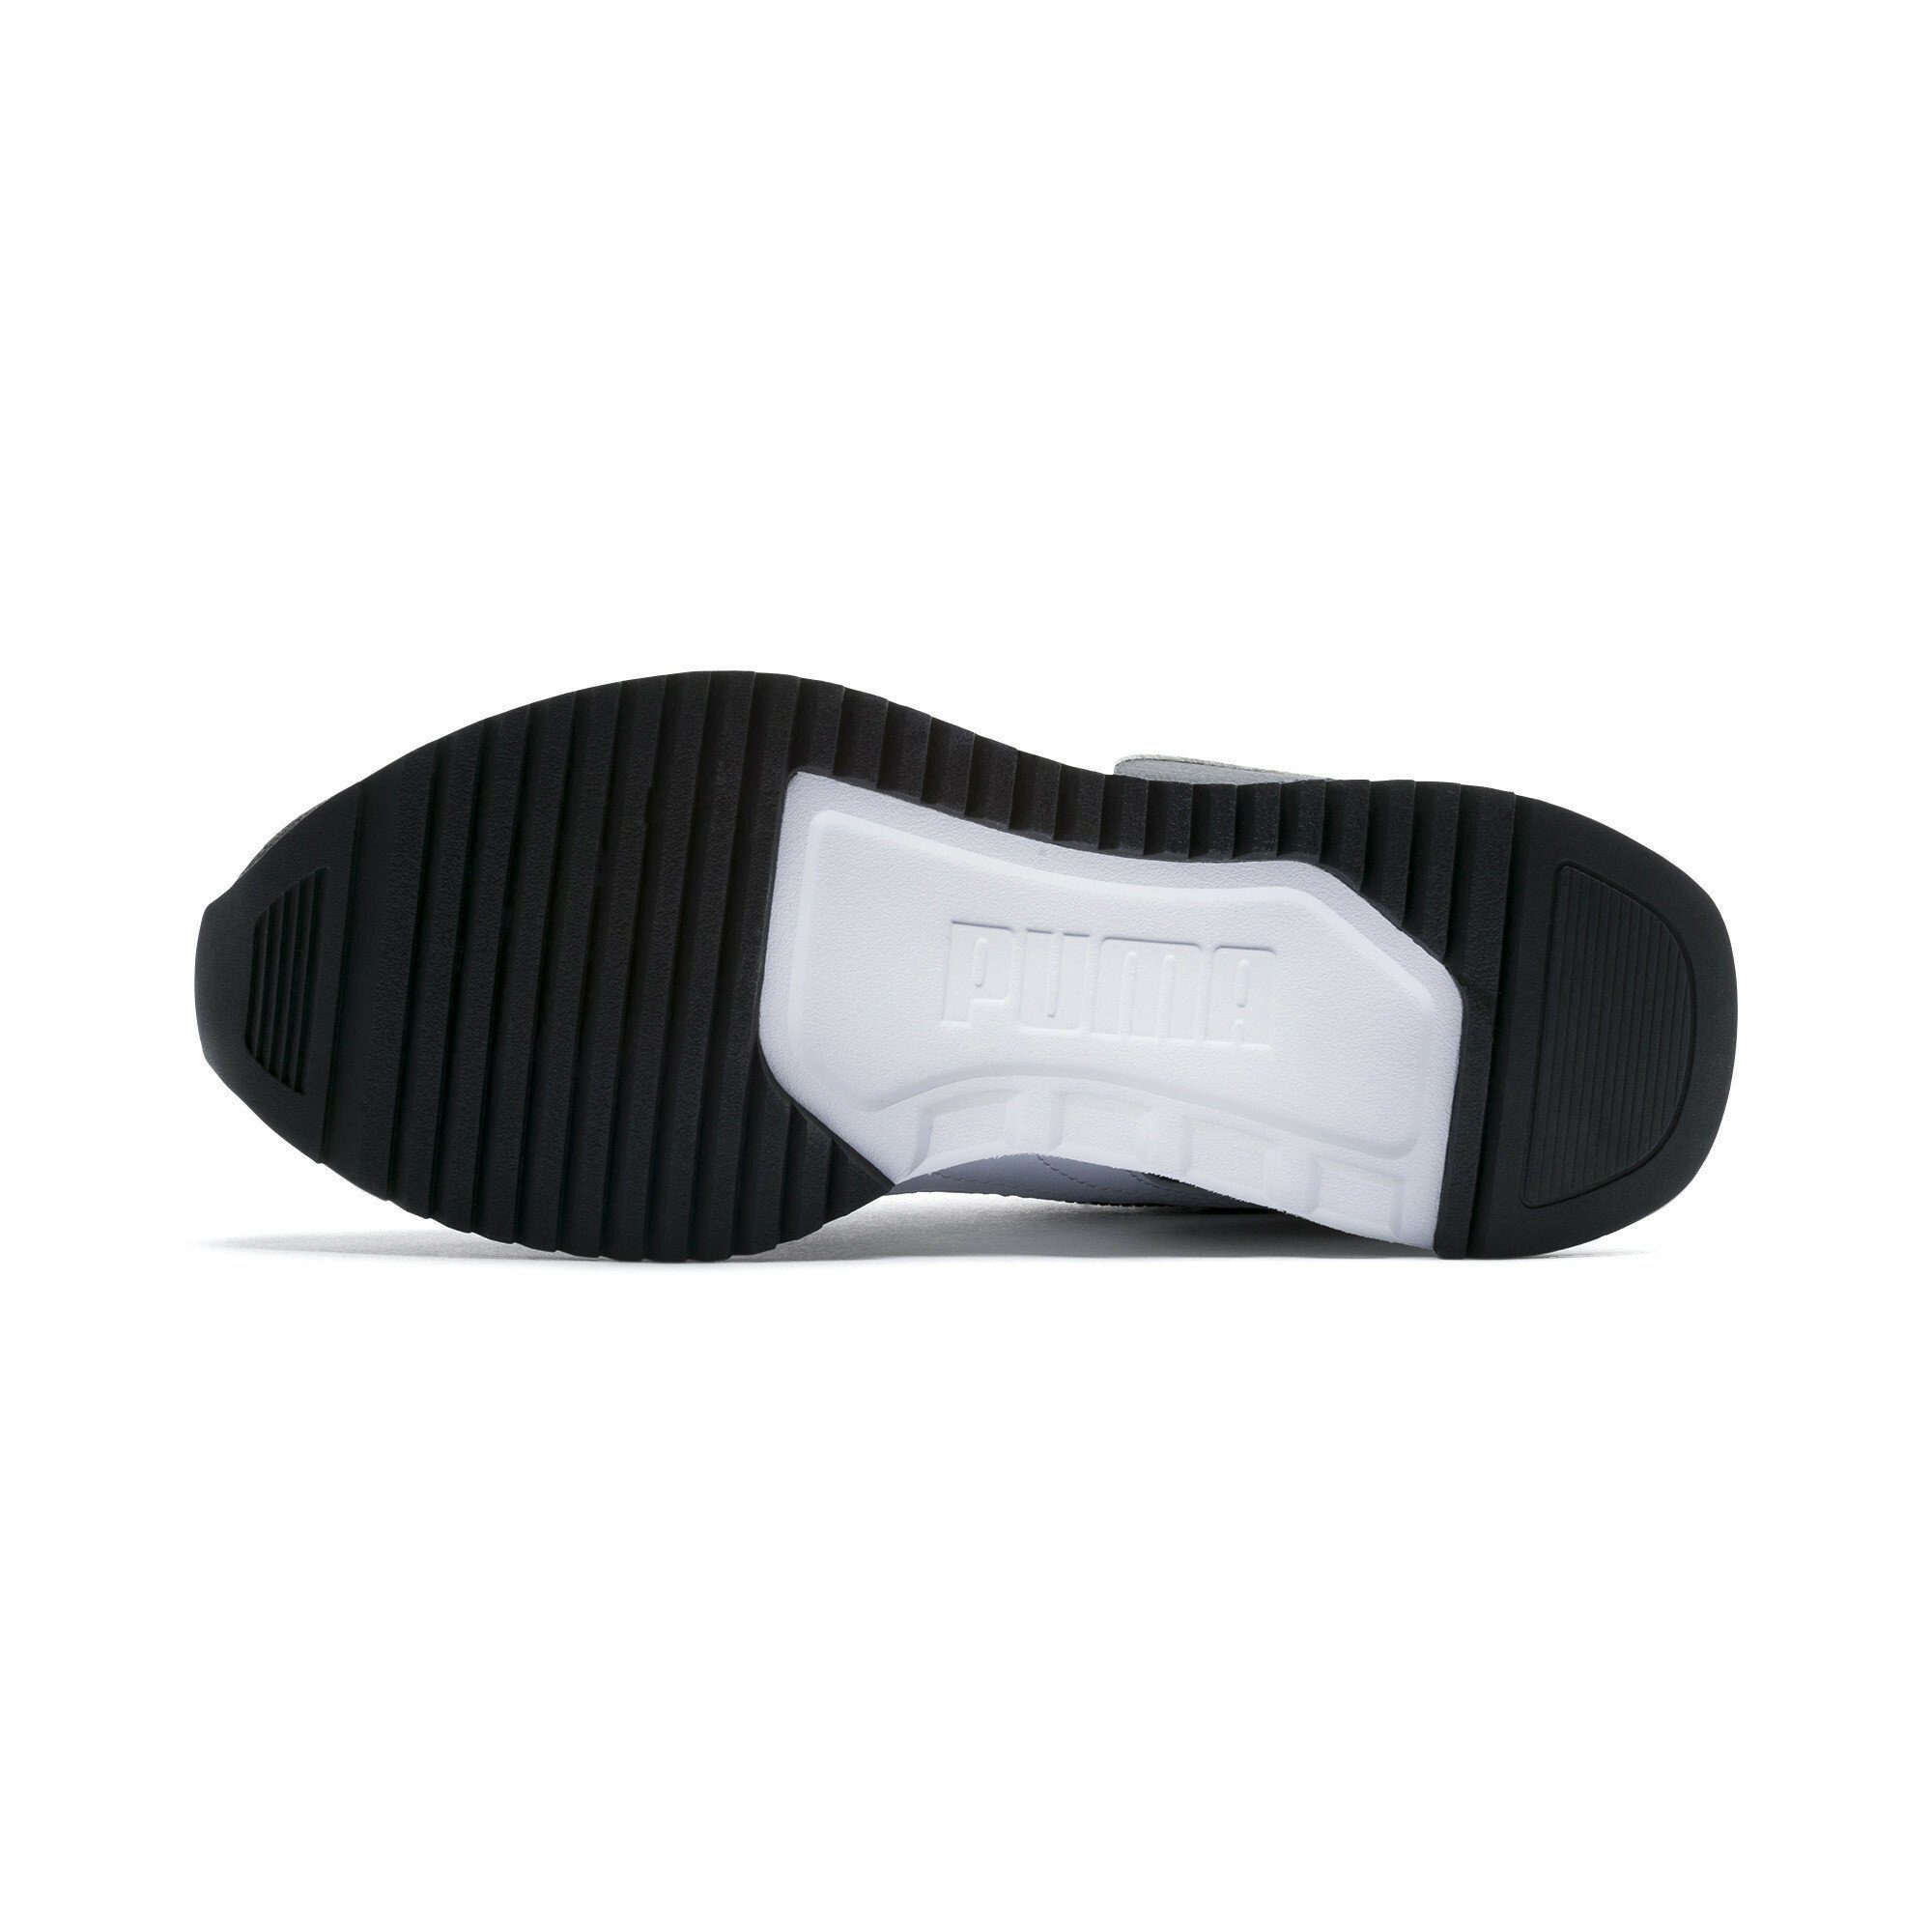 Sneakers Black Laufschuh Jugendliche PUMA White R78